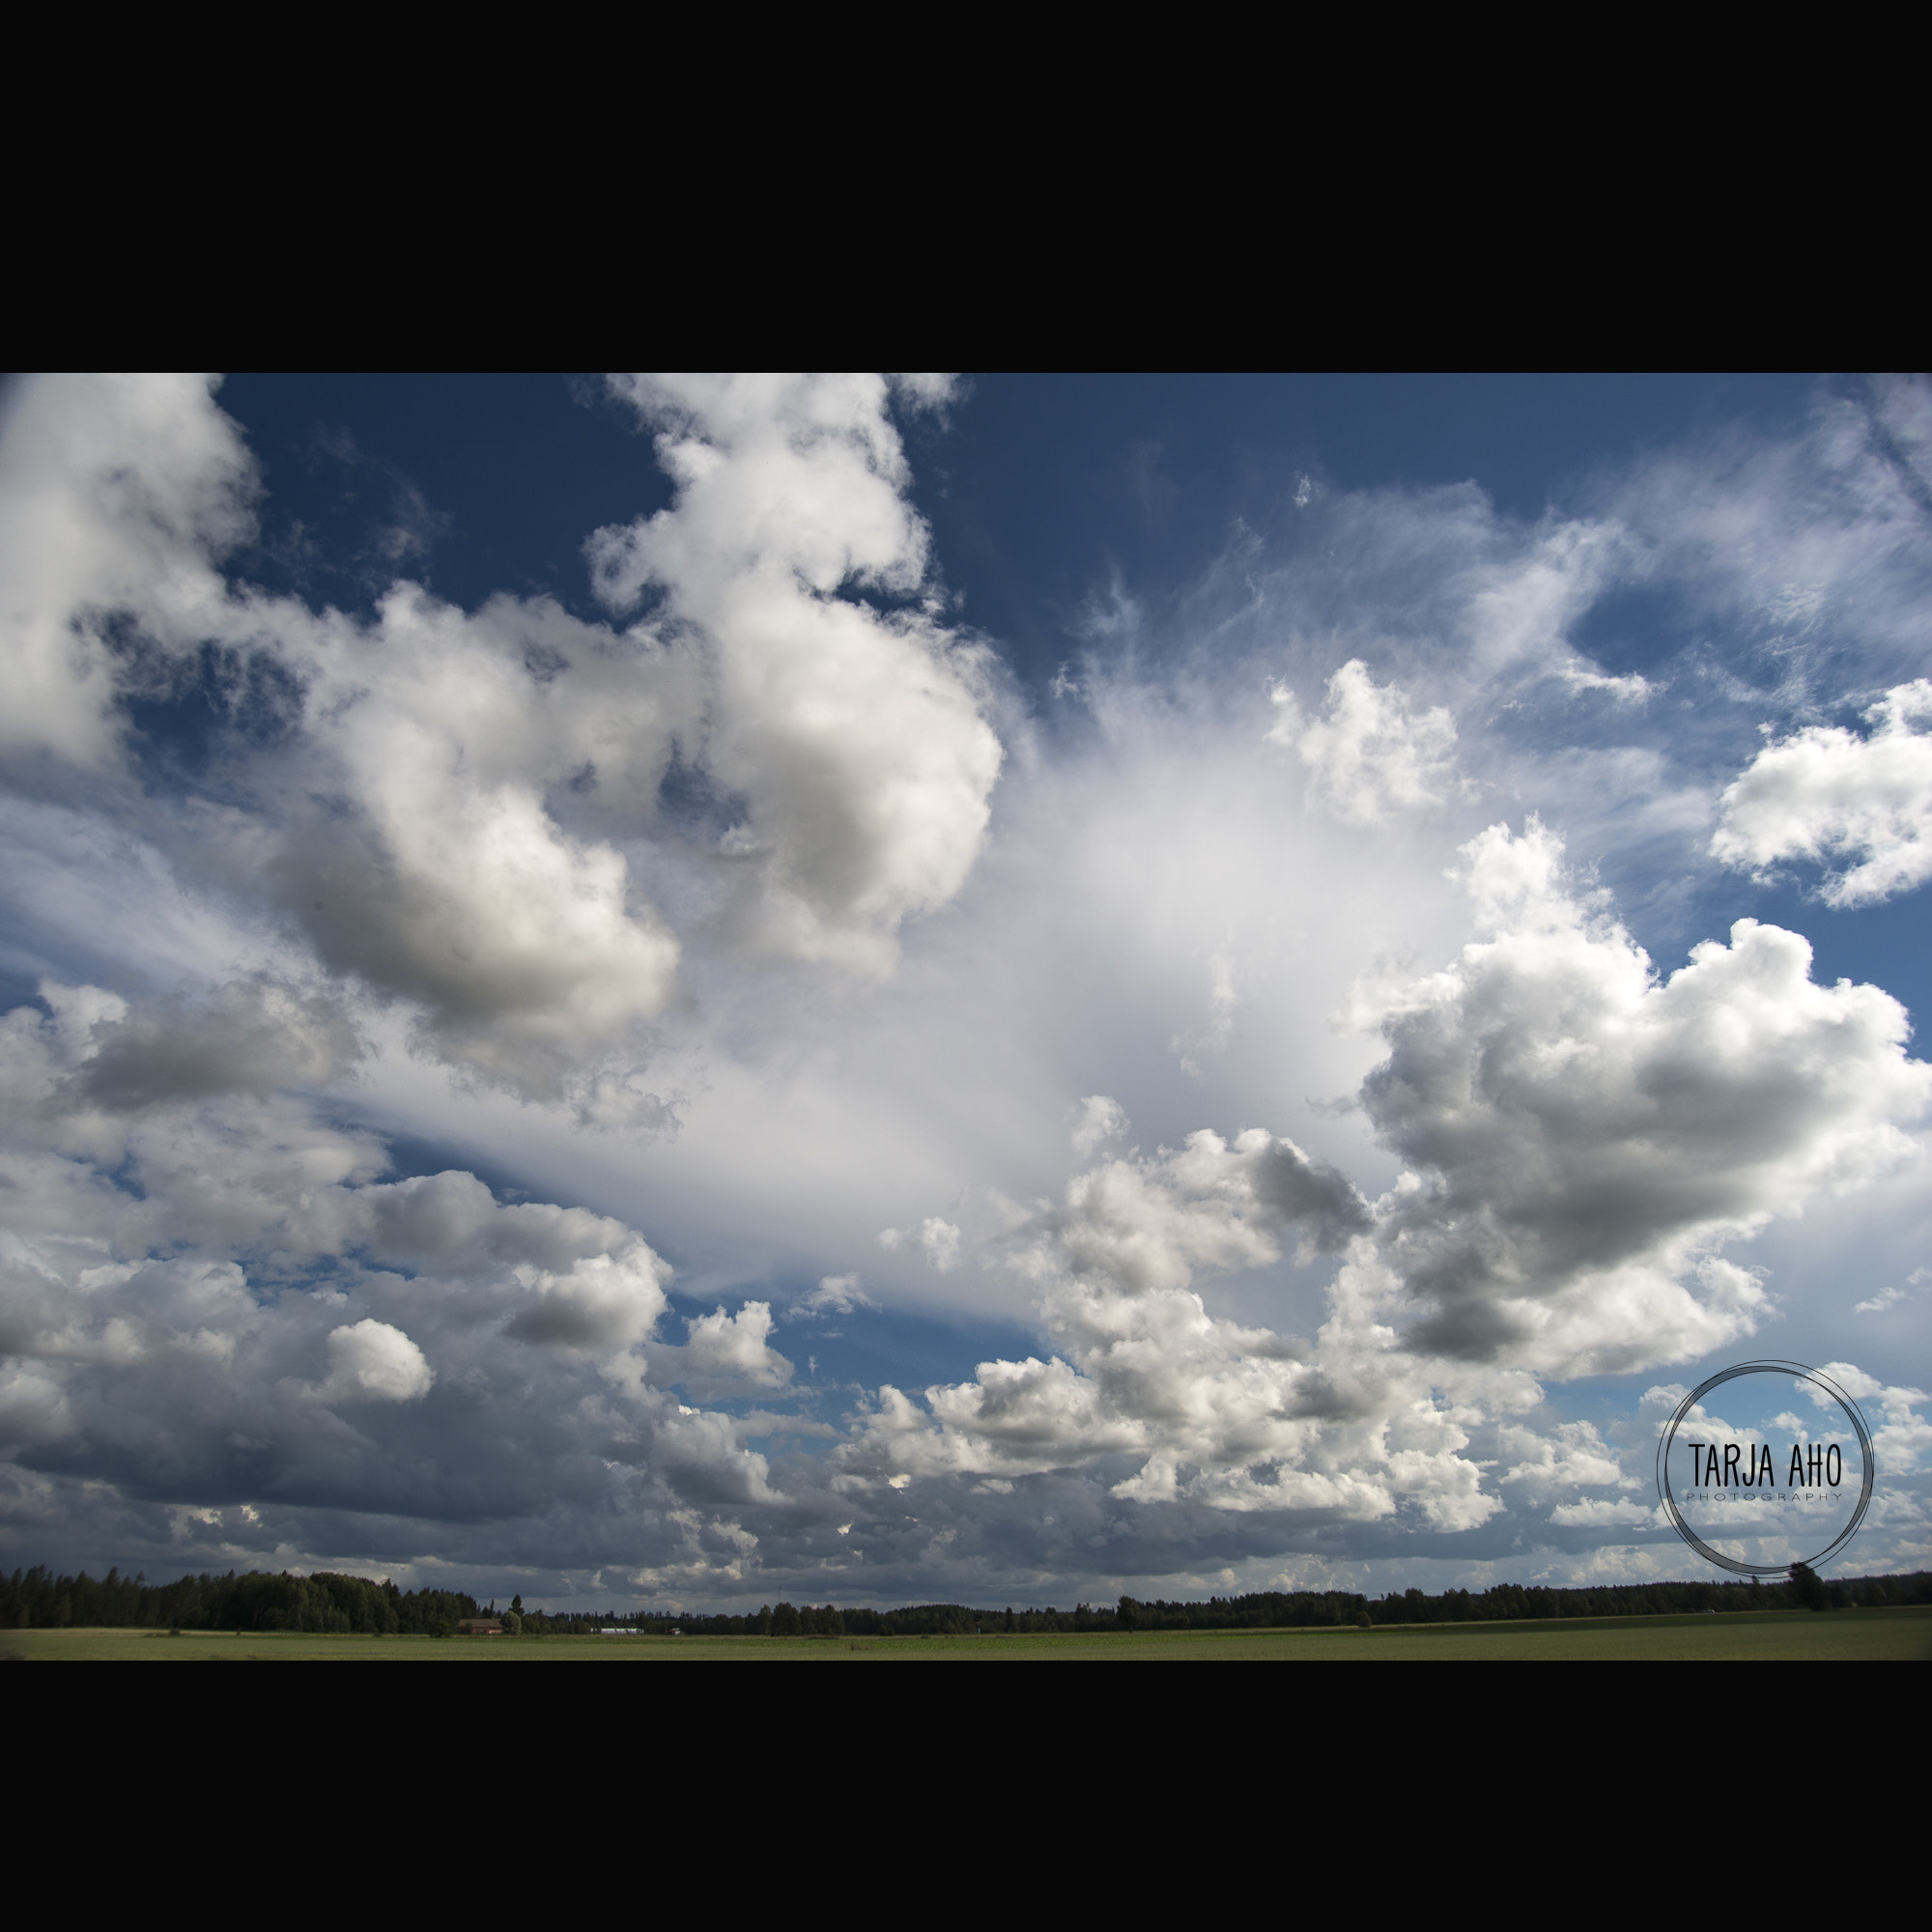 Nikon D800 + AF-S DX Zoom-Nikkor 18-55mm f/3.5-5.6G ED sample photo. Clouds1 photography